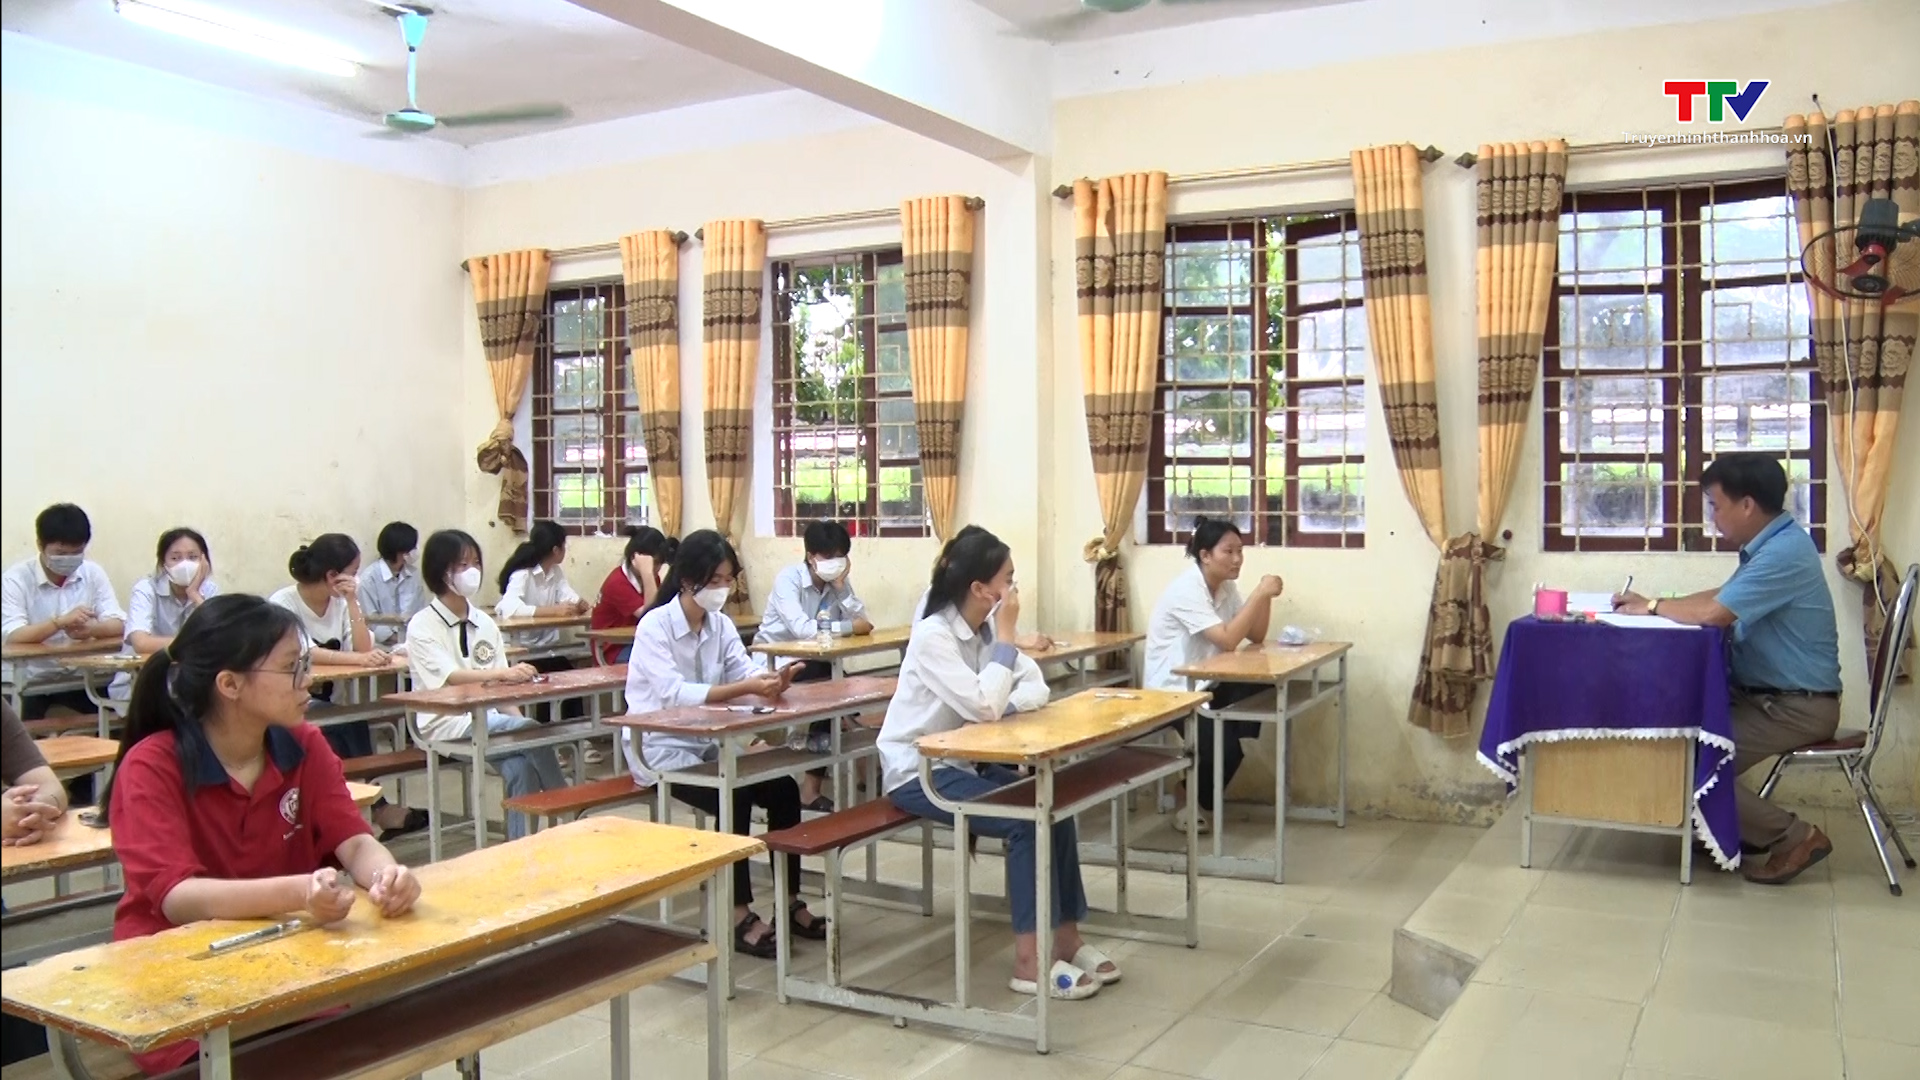 Hơn 1.000 thi sinh huyện Cẩm Thủy bước vào ngày thi đầu tiên - Ảnh 2.